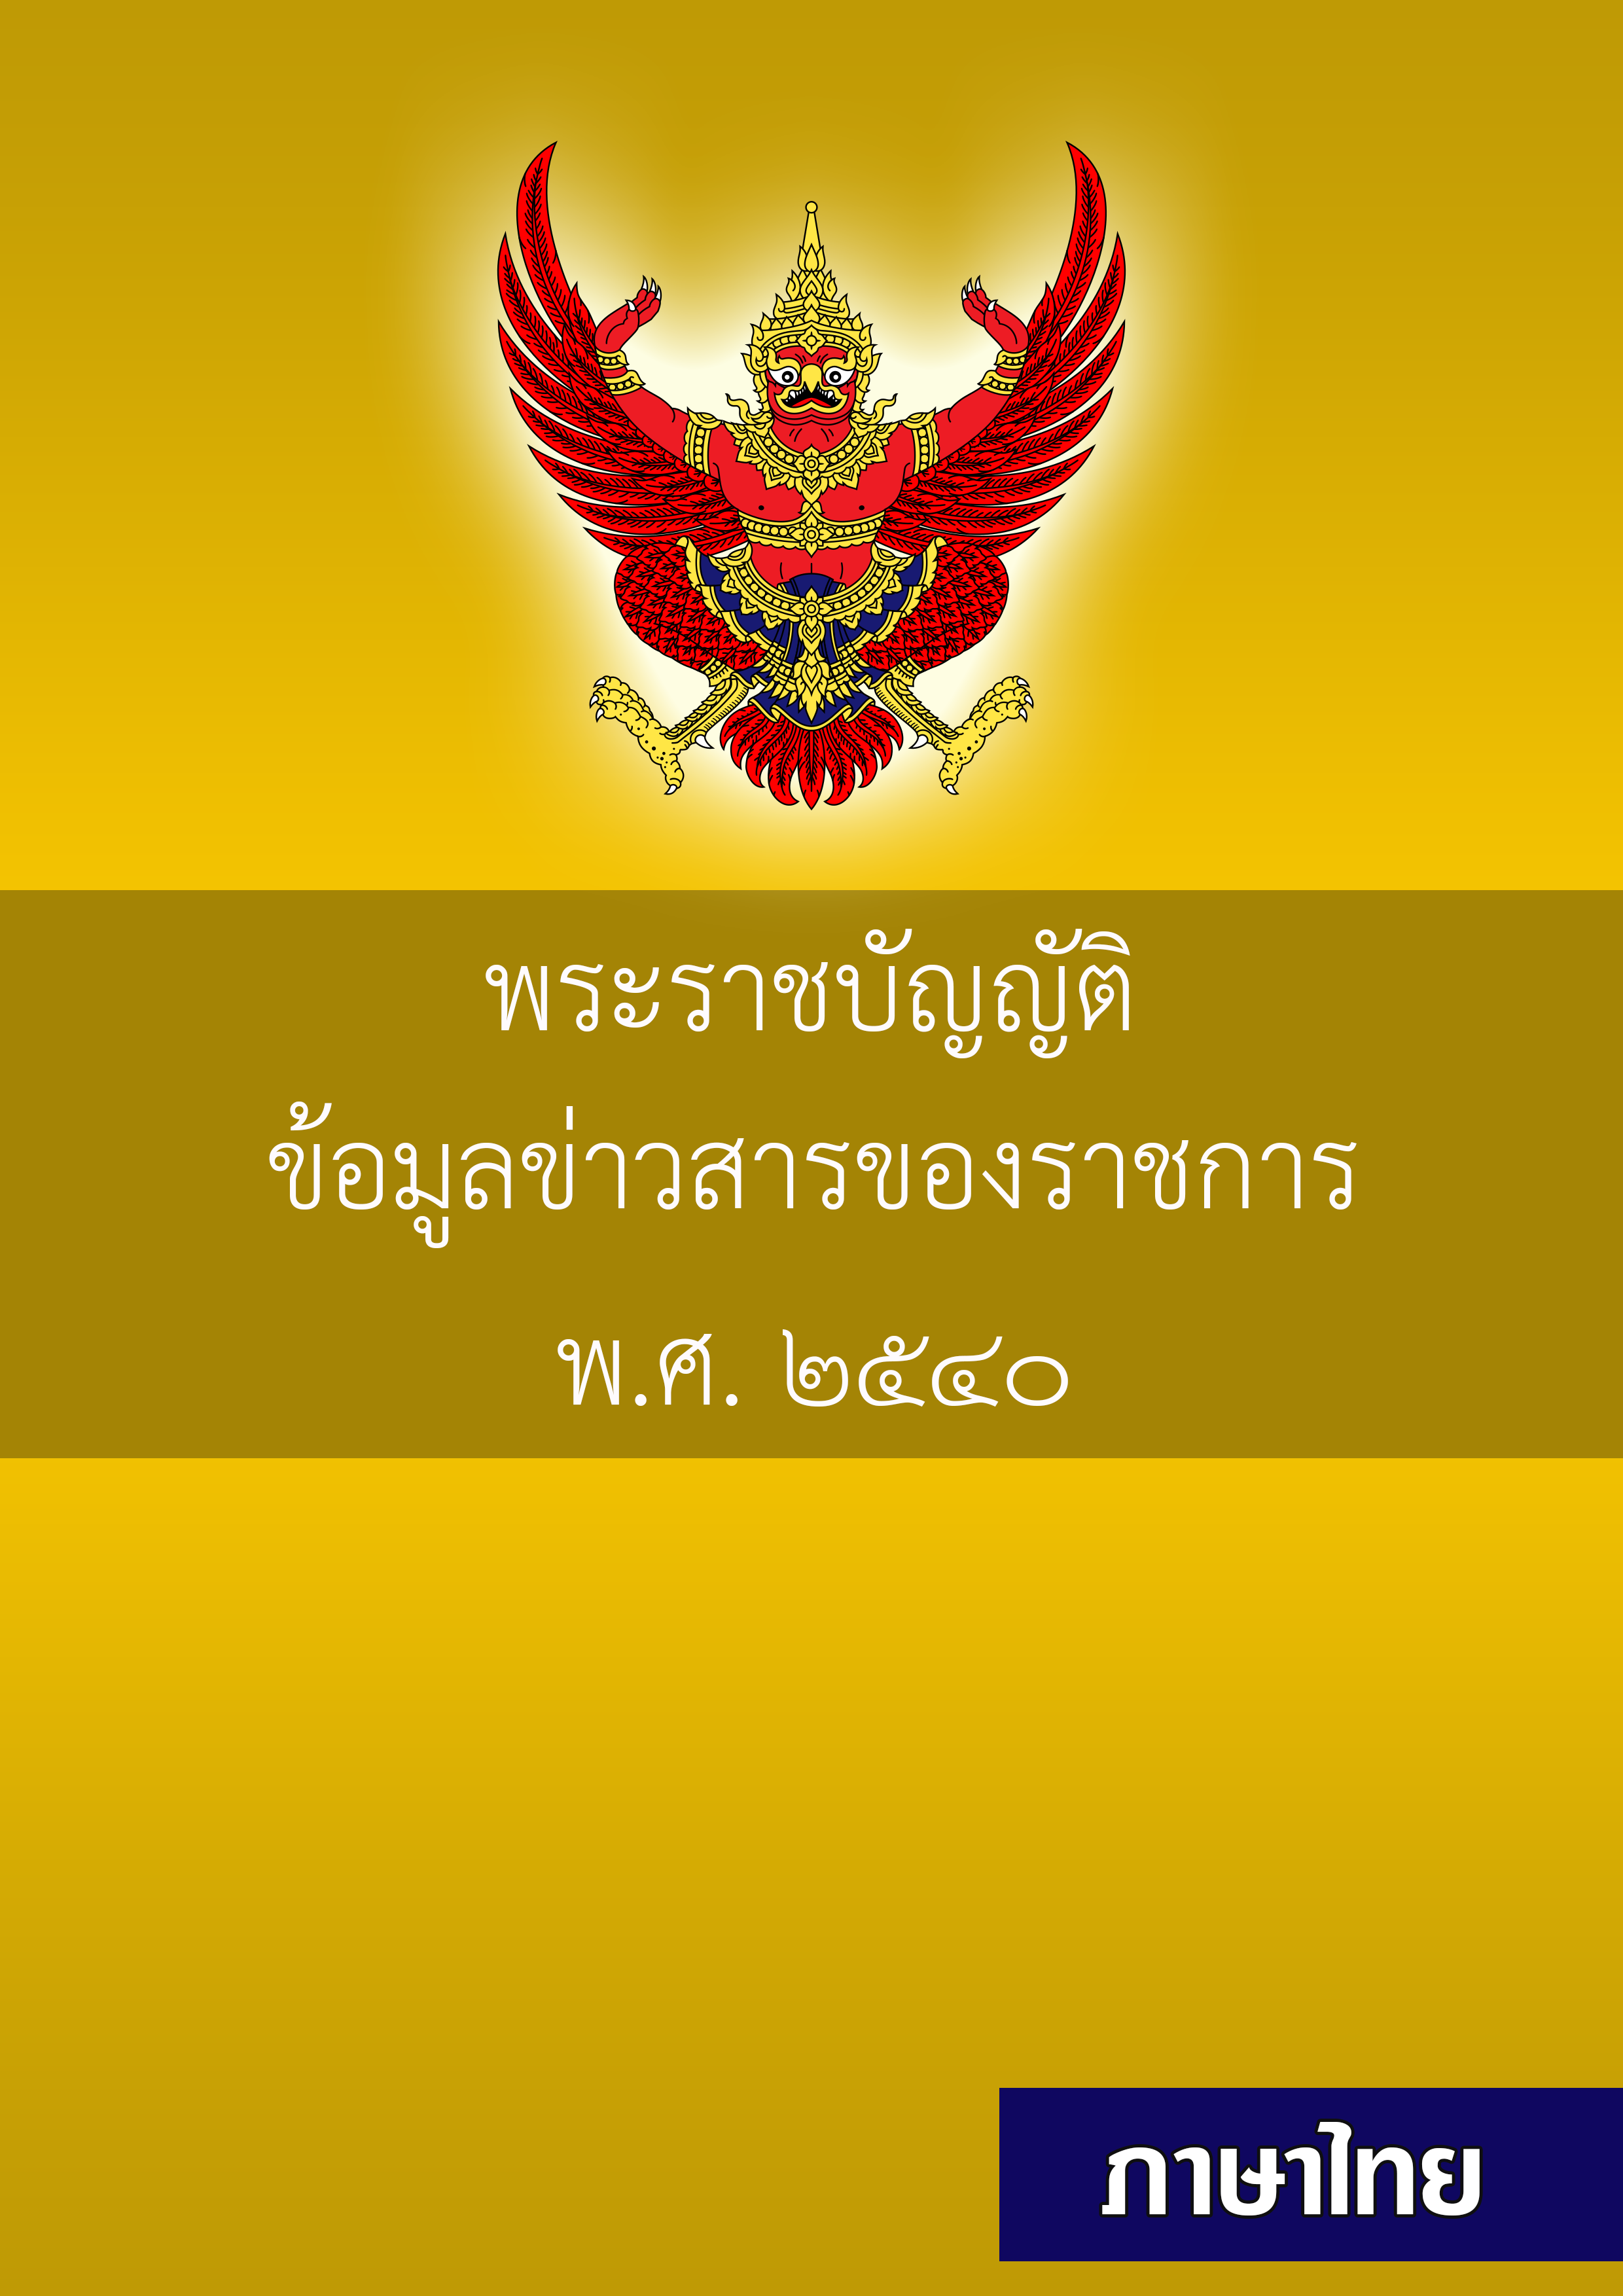 information thai